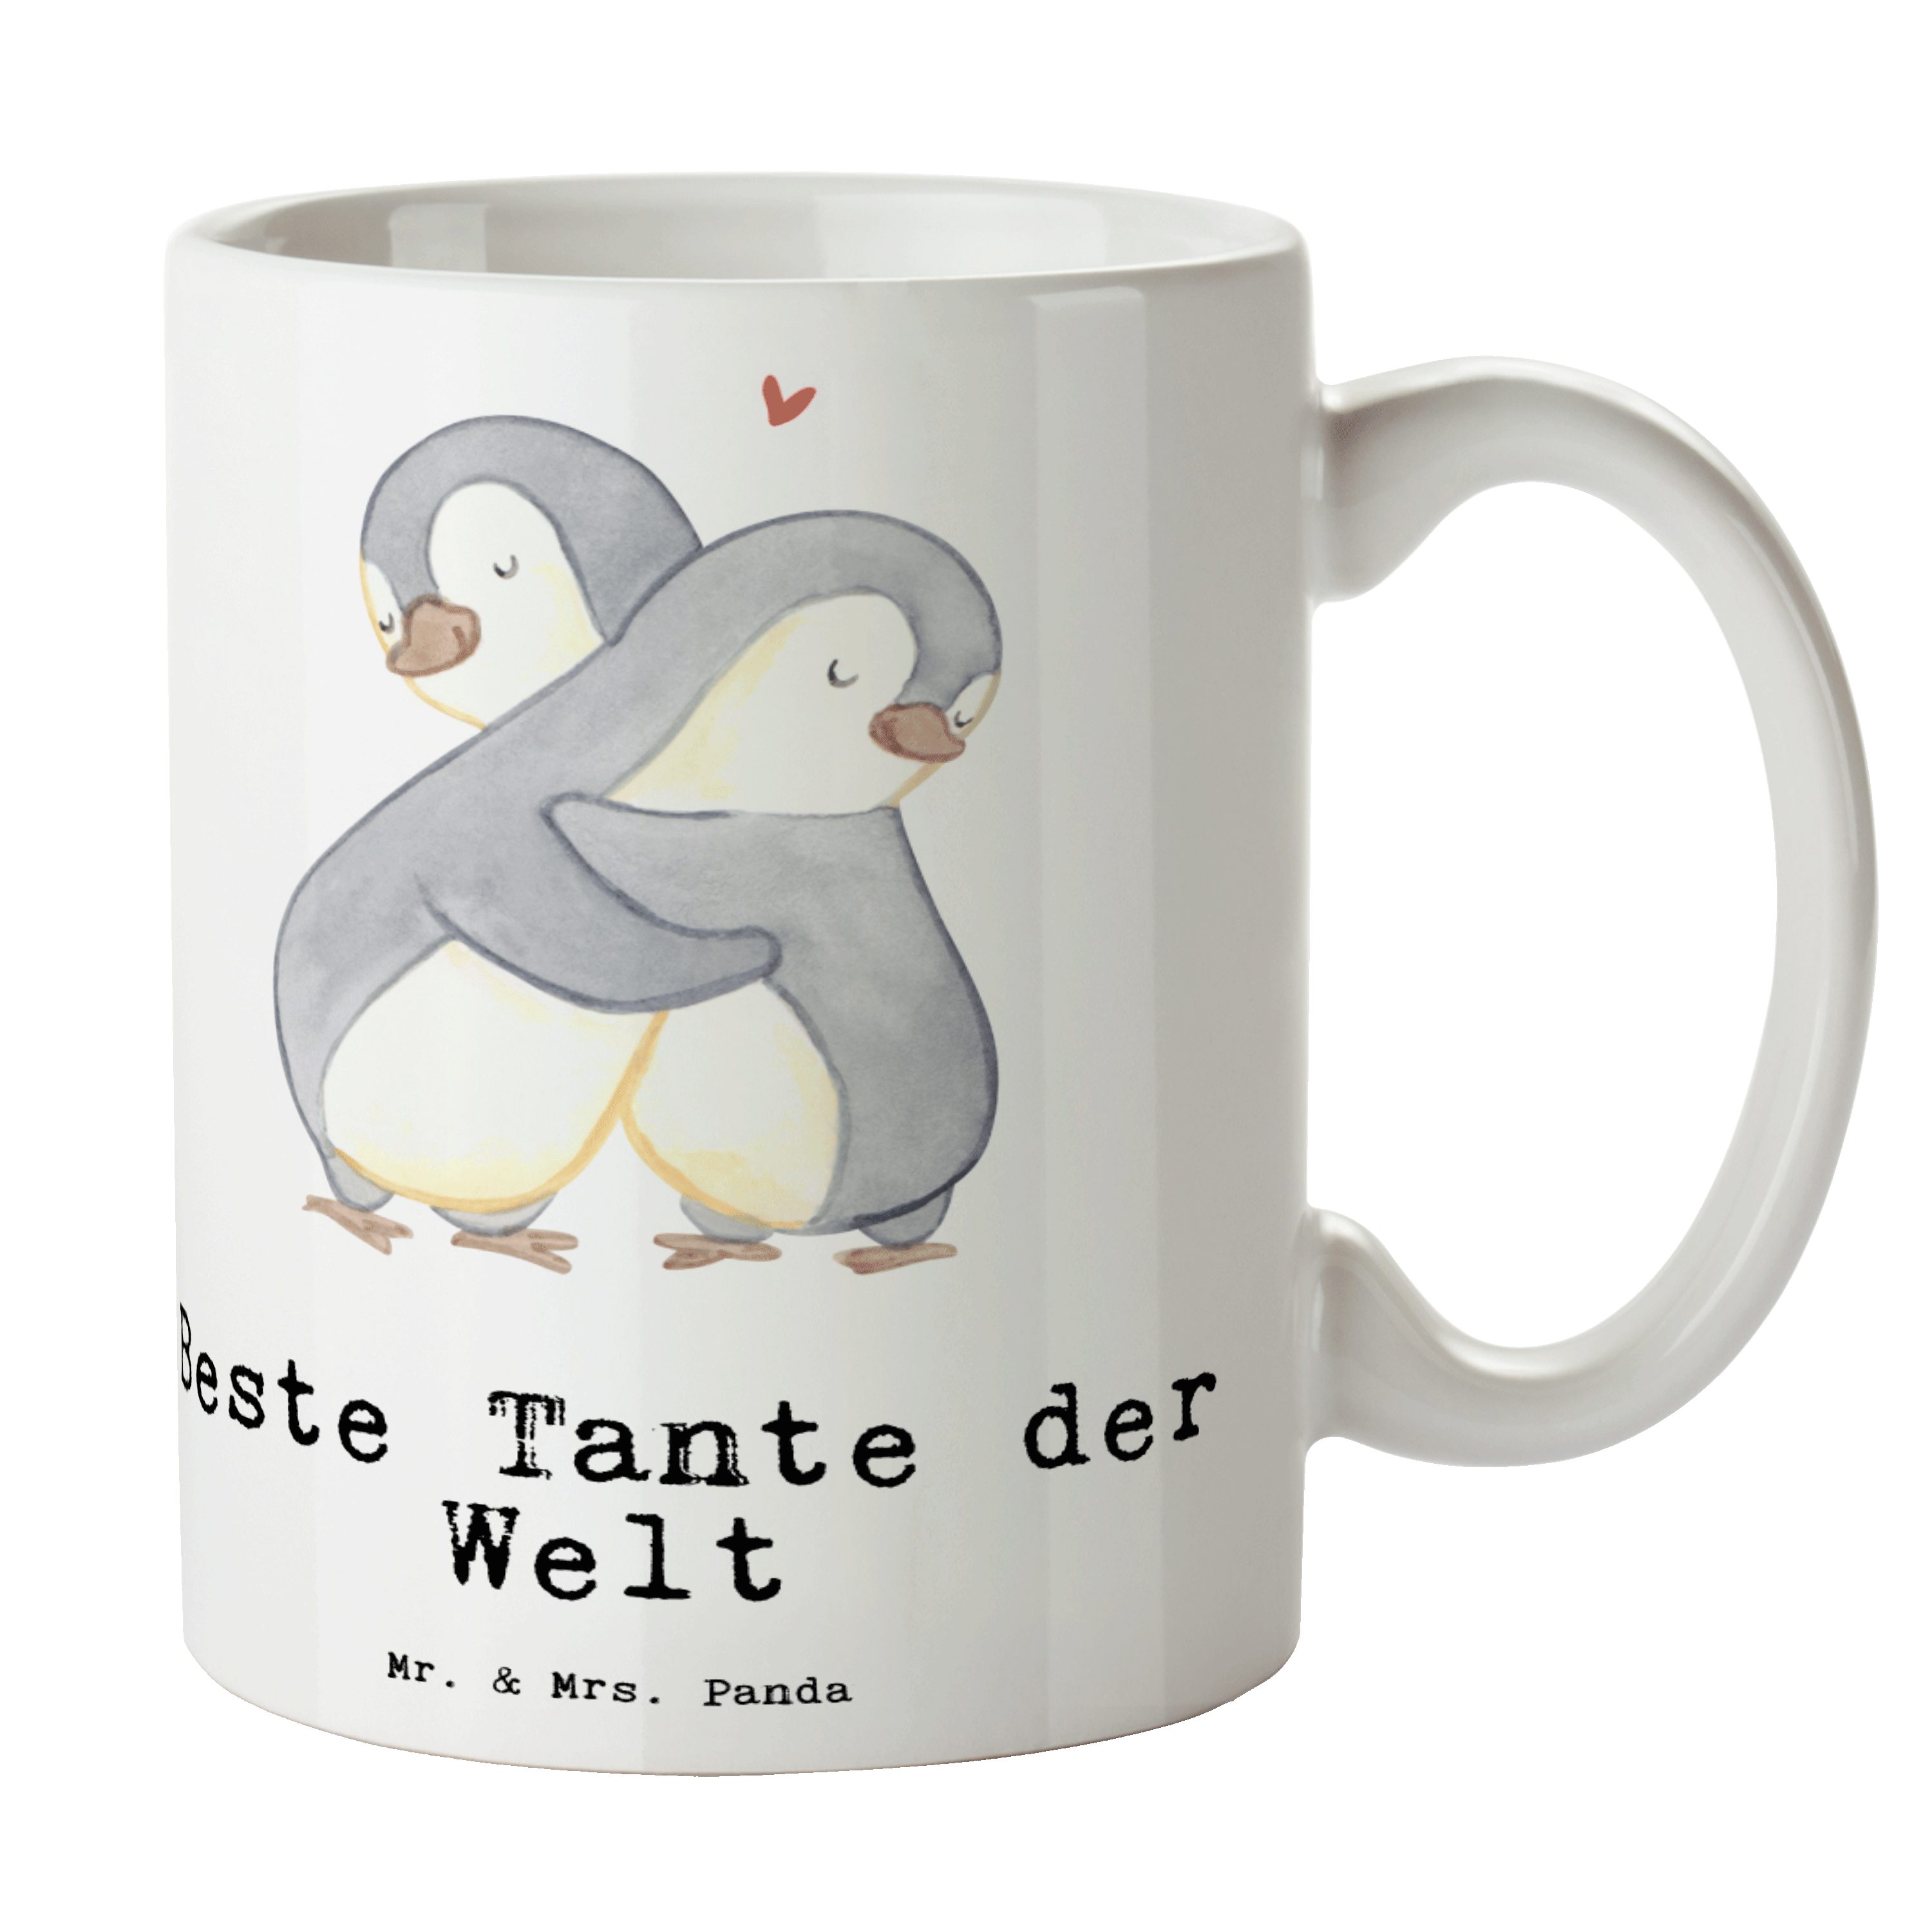 Mr. & Mrs. Panda Tasse Pinguin Beste Tante der Welt - Weiß - Geschenk, Geburtstag, Dankeschön, Geburtstagsgeschenk, Büro, Schenken, Becher, Taufe, Tee, Familie, Kaffeebecher, Keramik